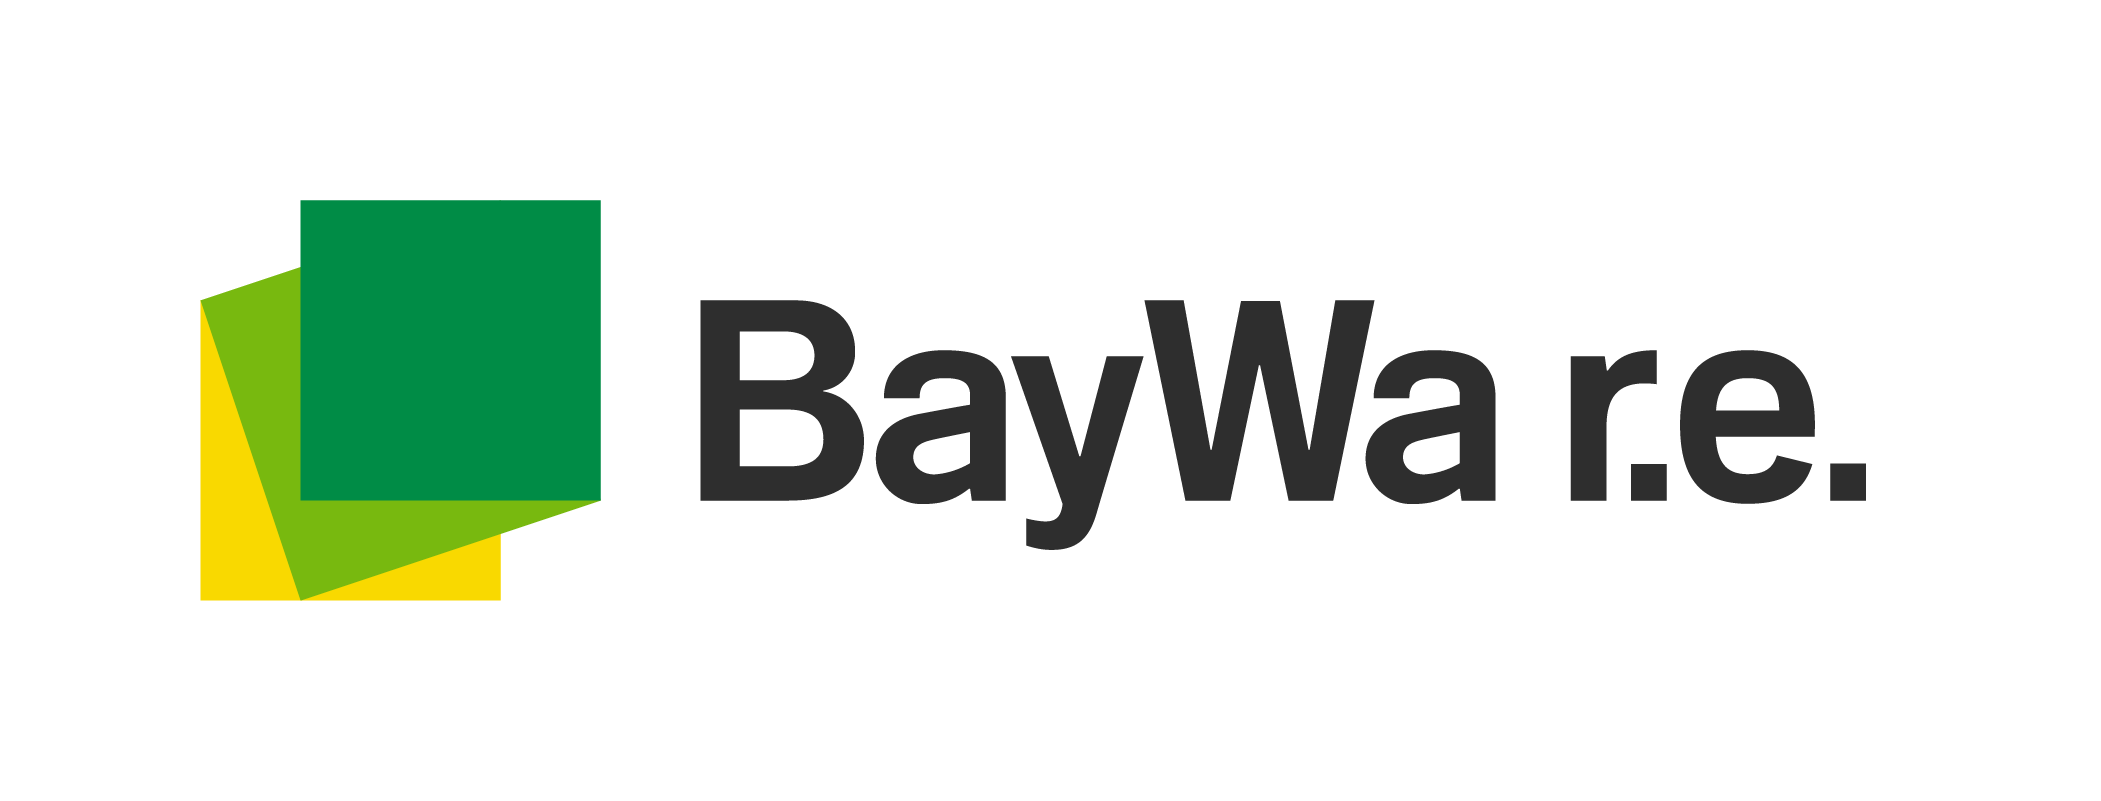 Baywa R.E.标识